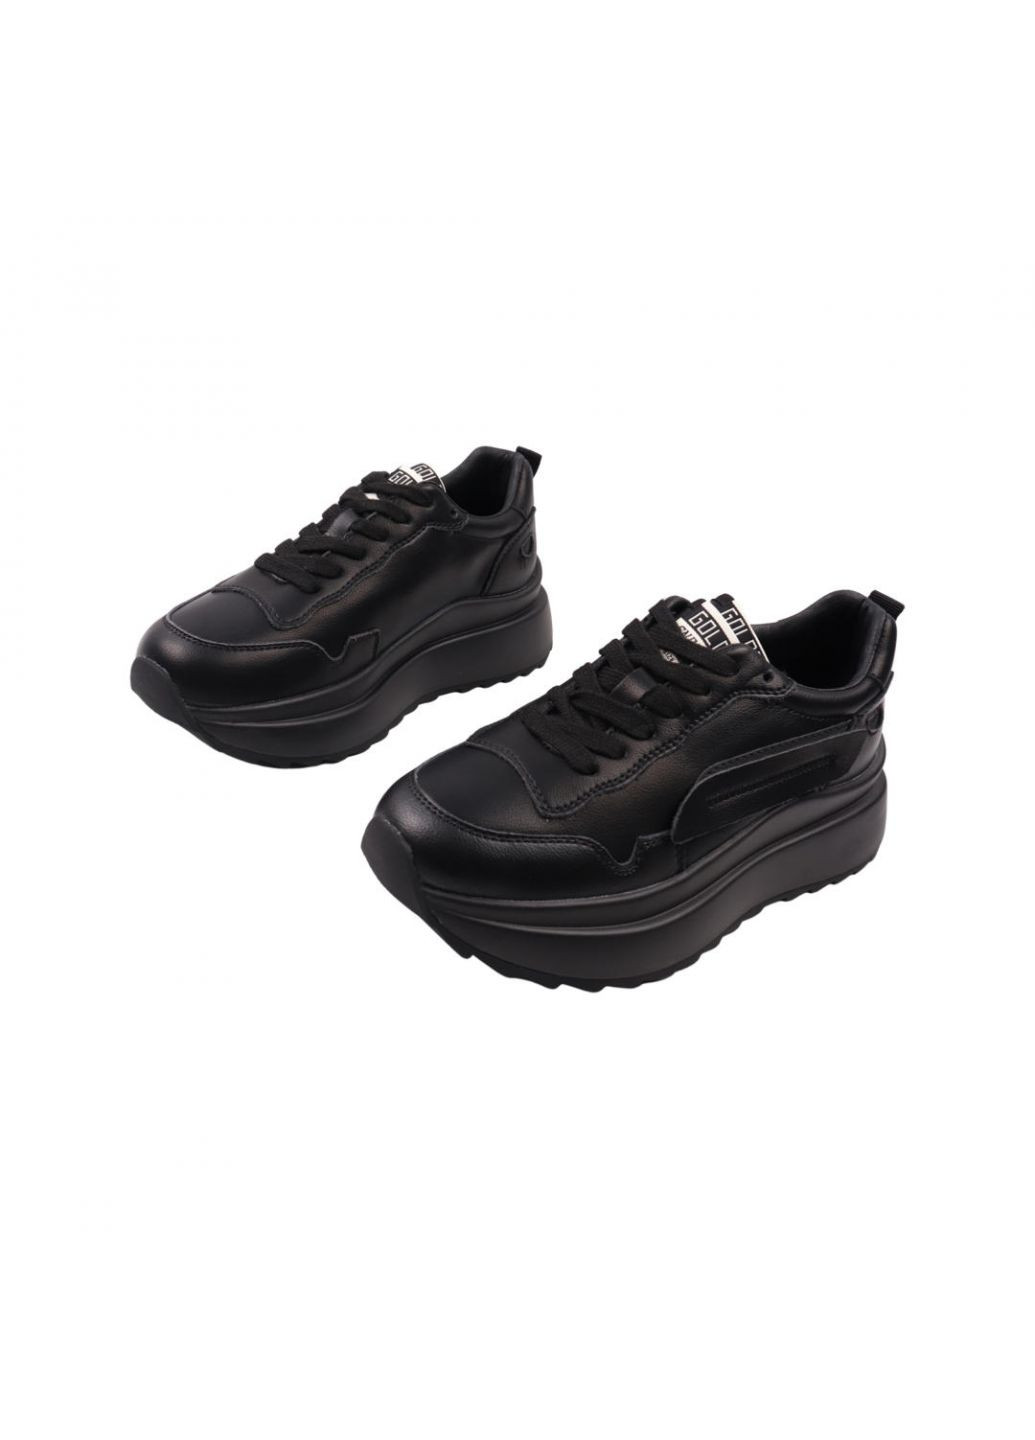 Чорні кросівки жіночі чорні натуральна шкіра Lifexpert 1084-22DK